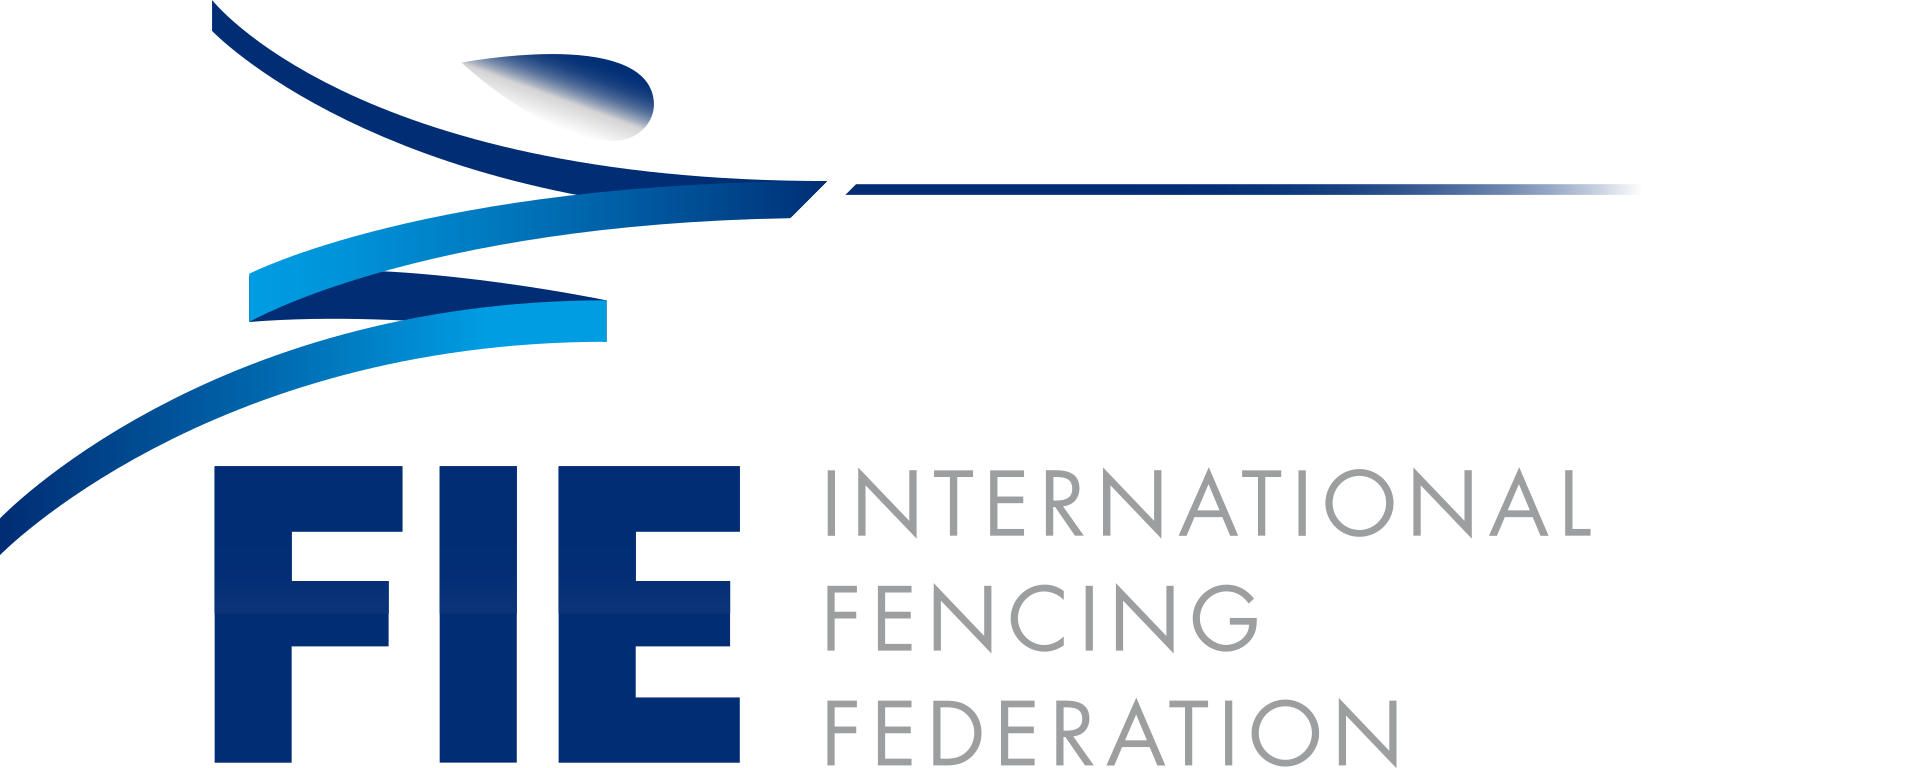 International Fencing Federation (FIE)